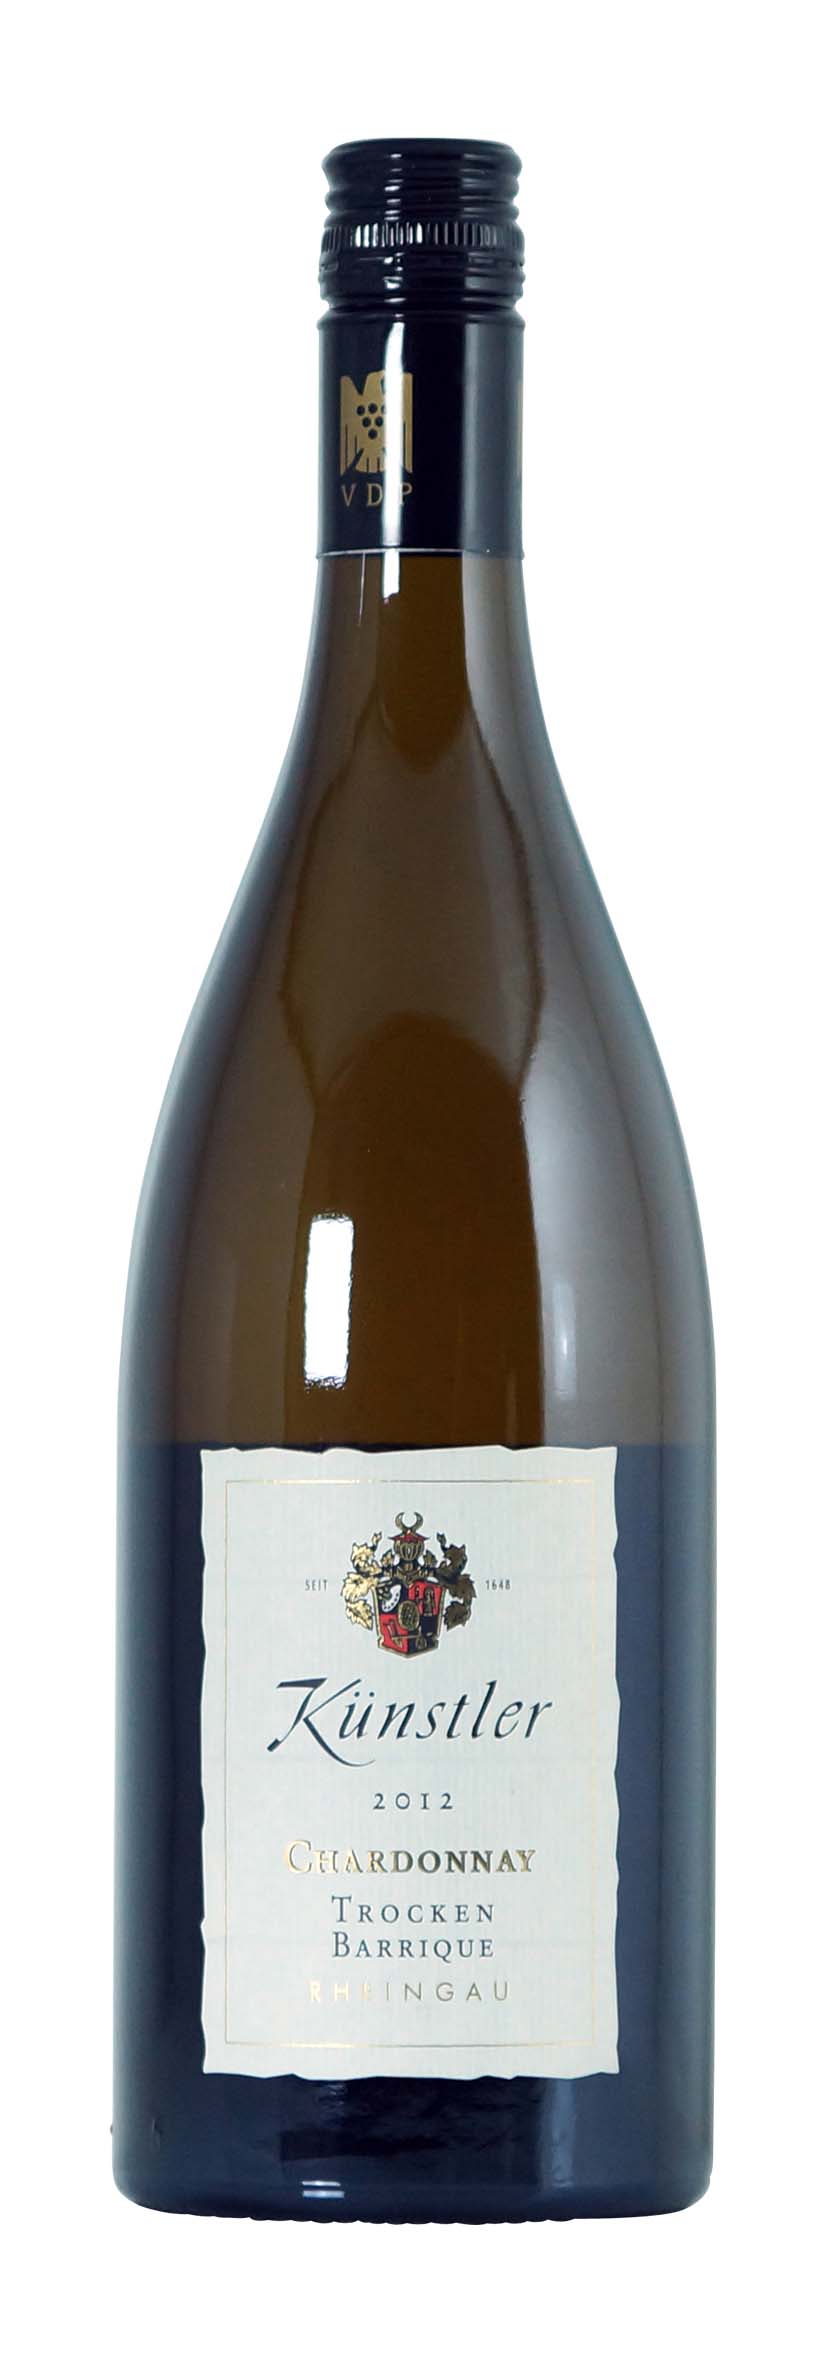 Rheingau Chardonnay Barrique trocken 2012